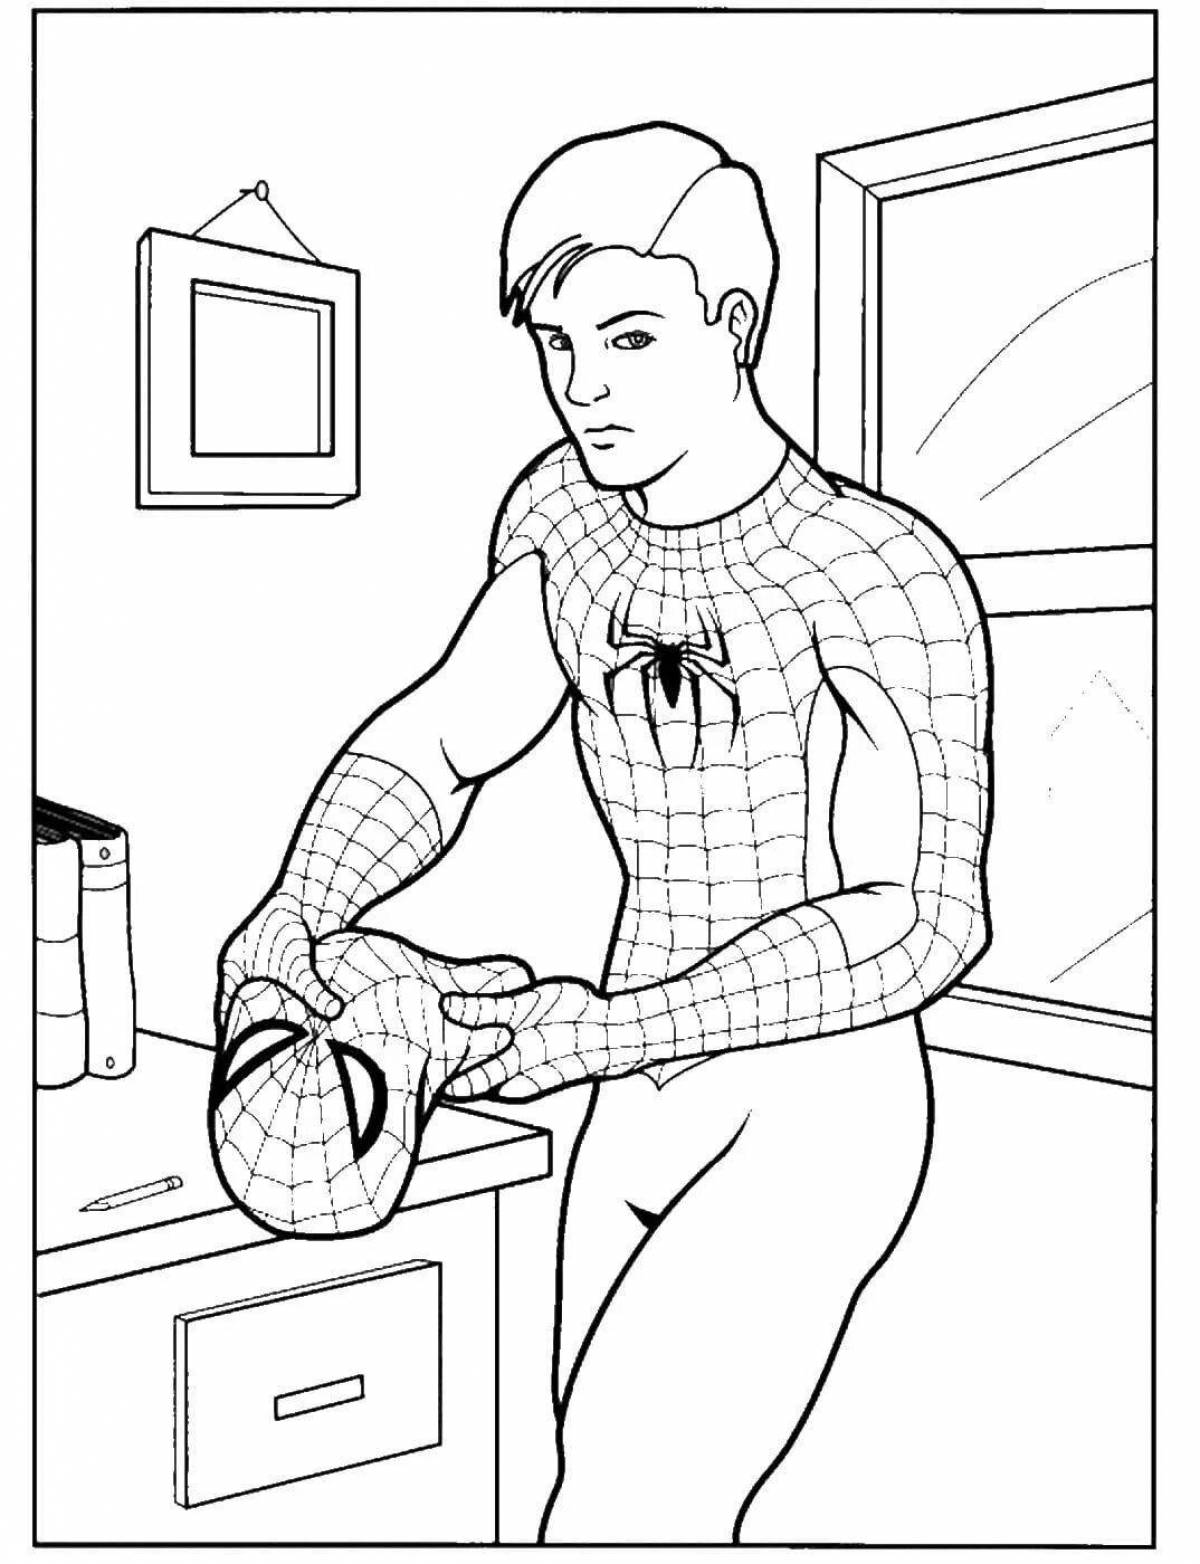 Забавная раскраска человека-паука